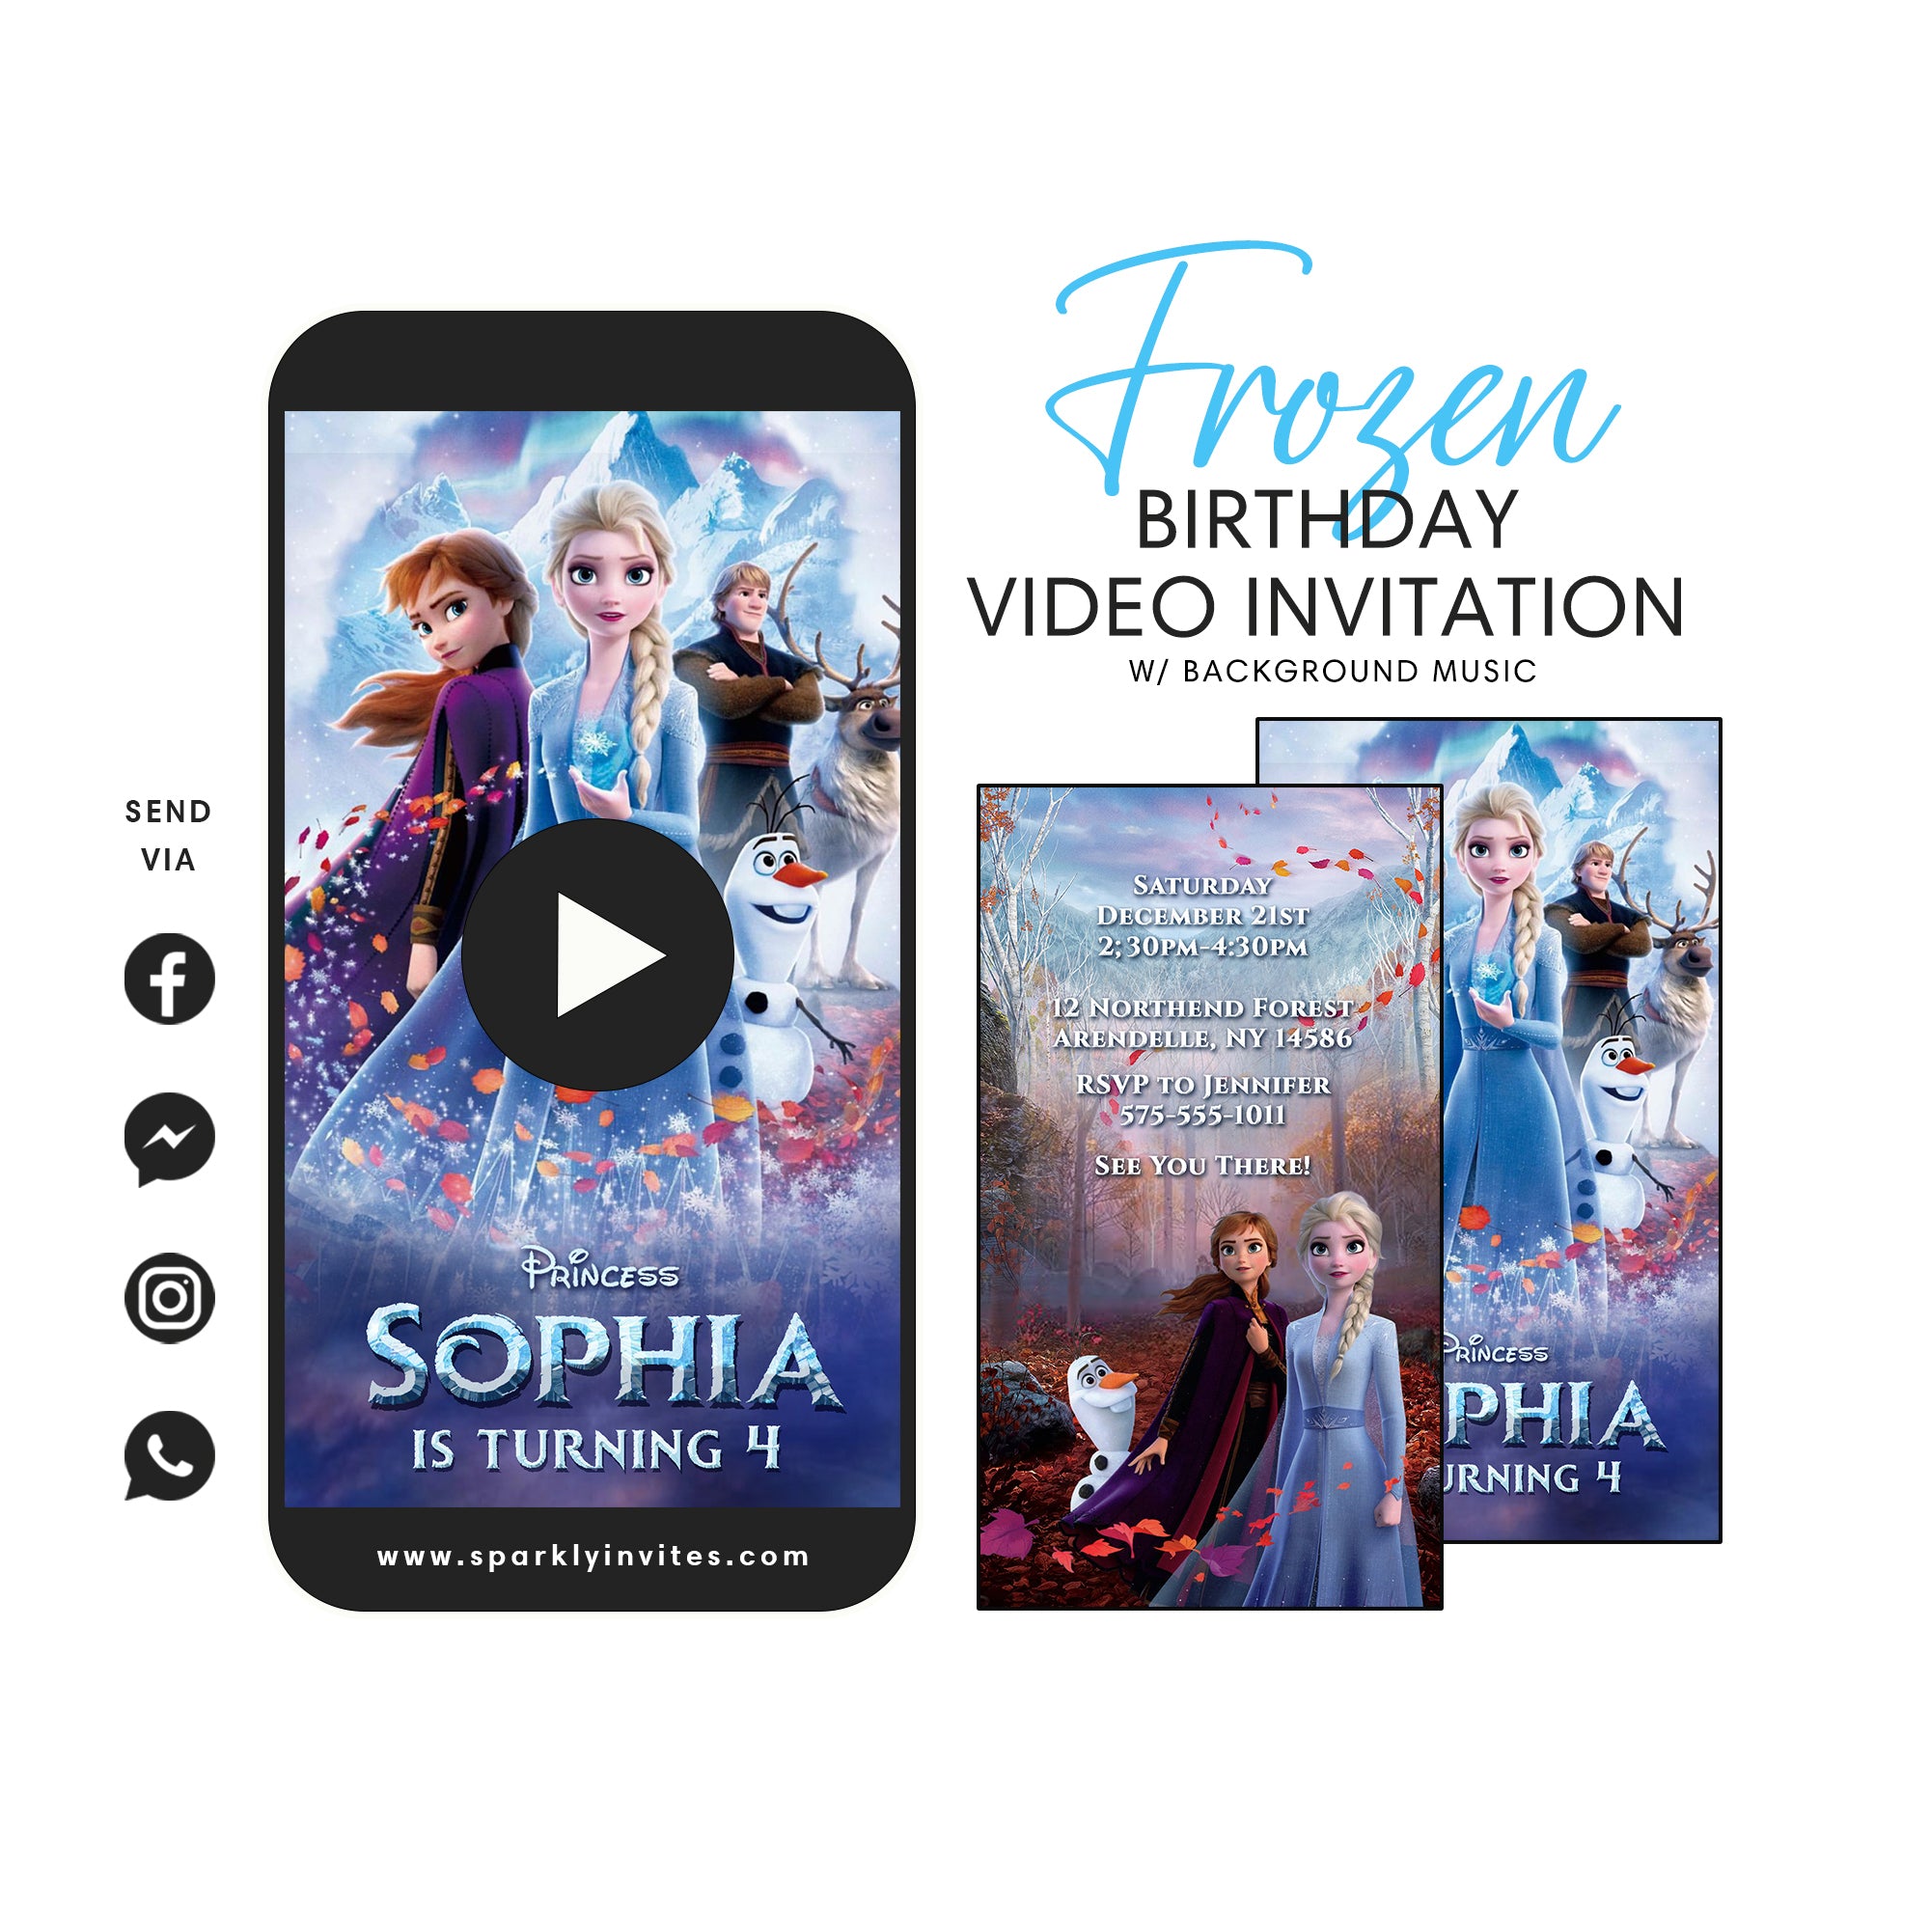 Frozen 2 video invitation